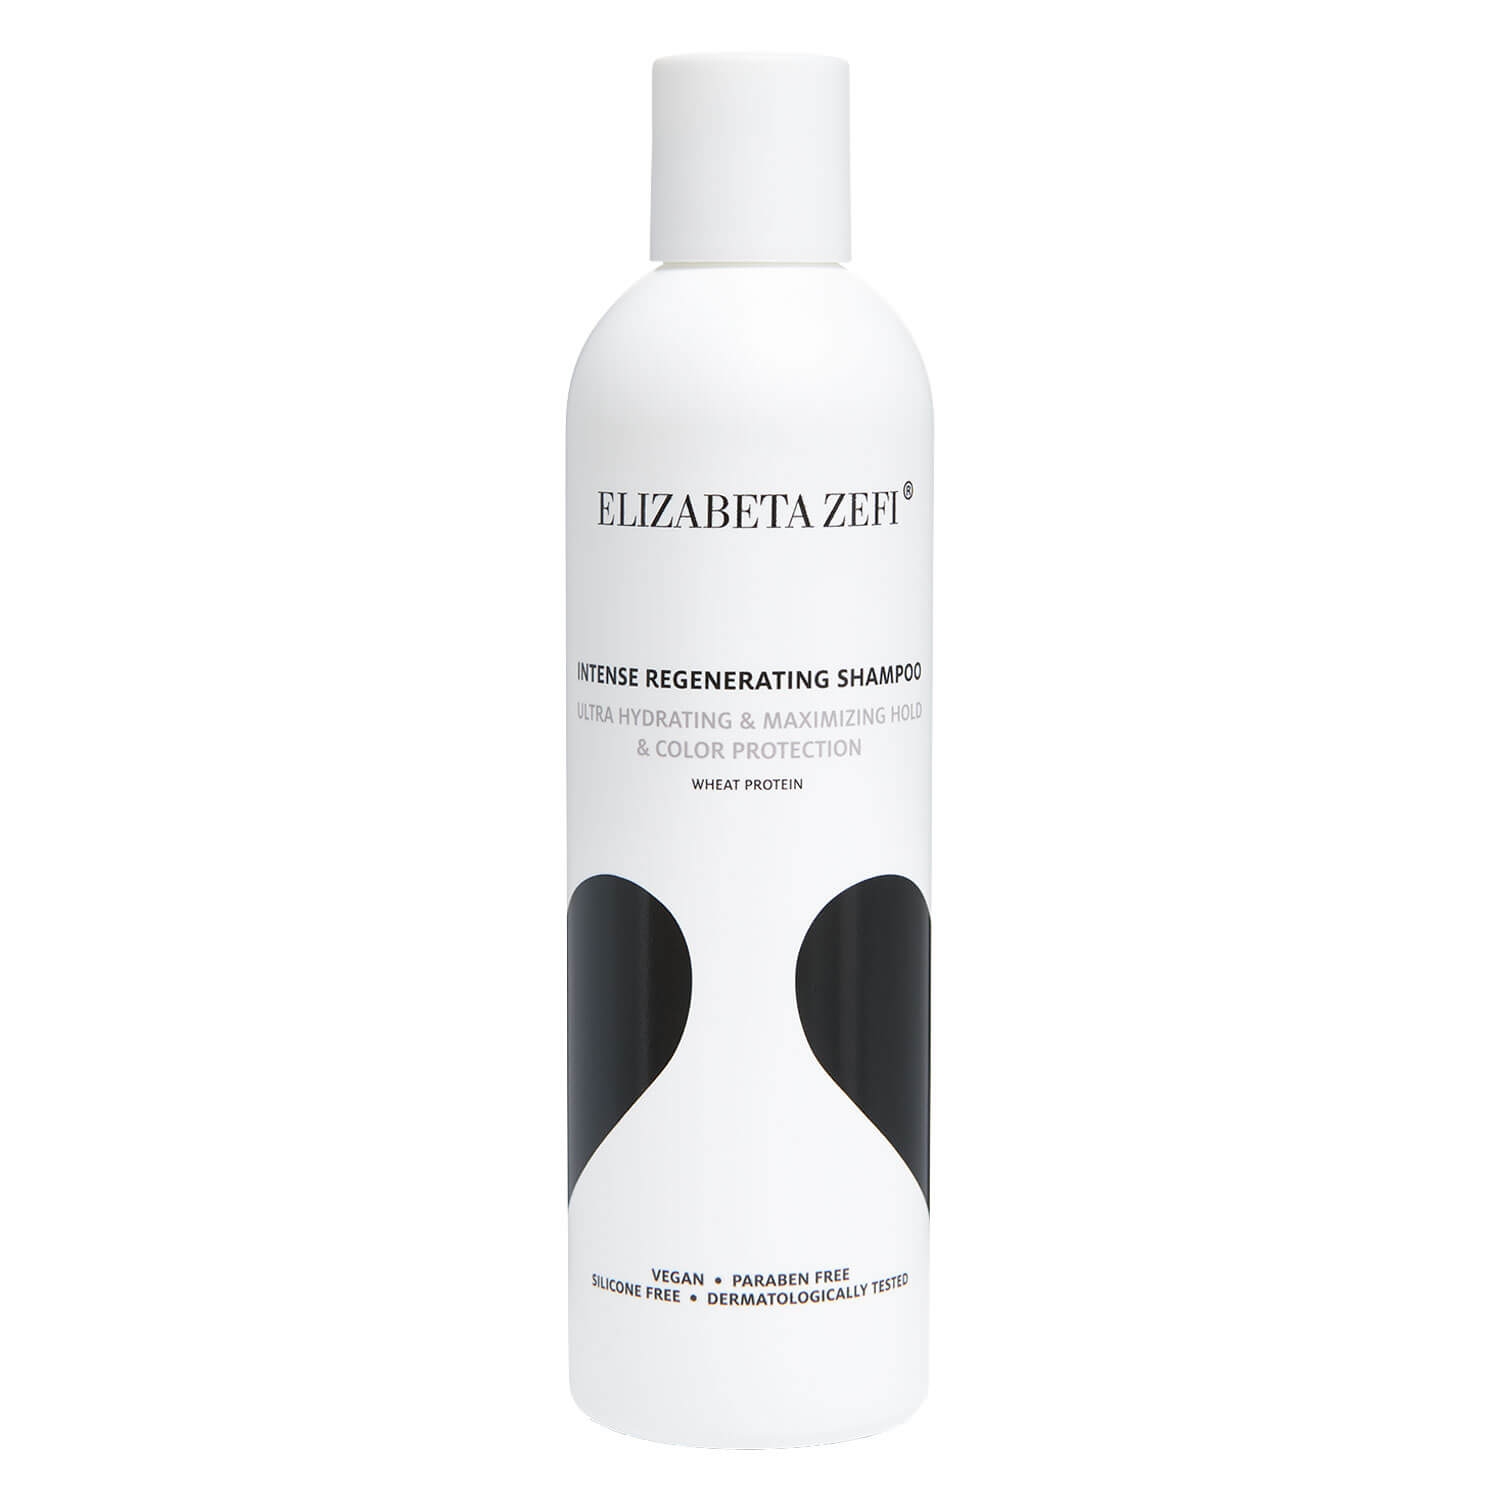 Product image from Elizabeta Zefi - Intense Regenerating Shampoo